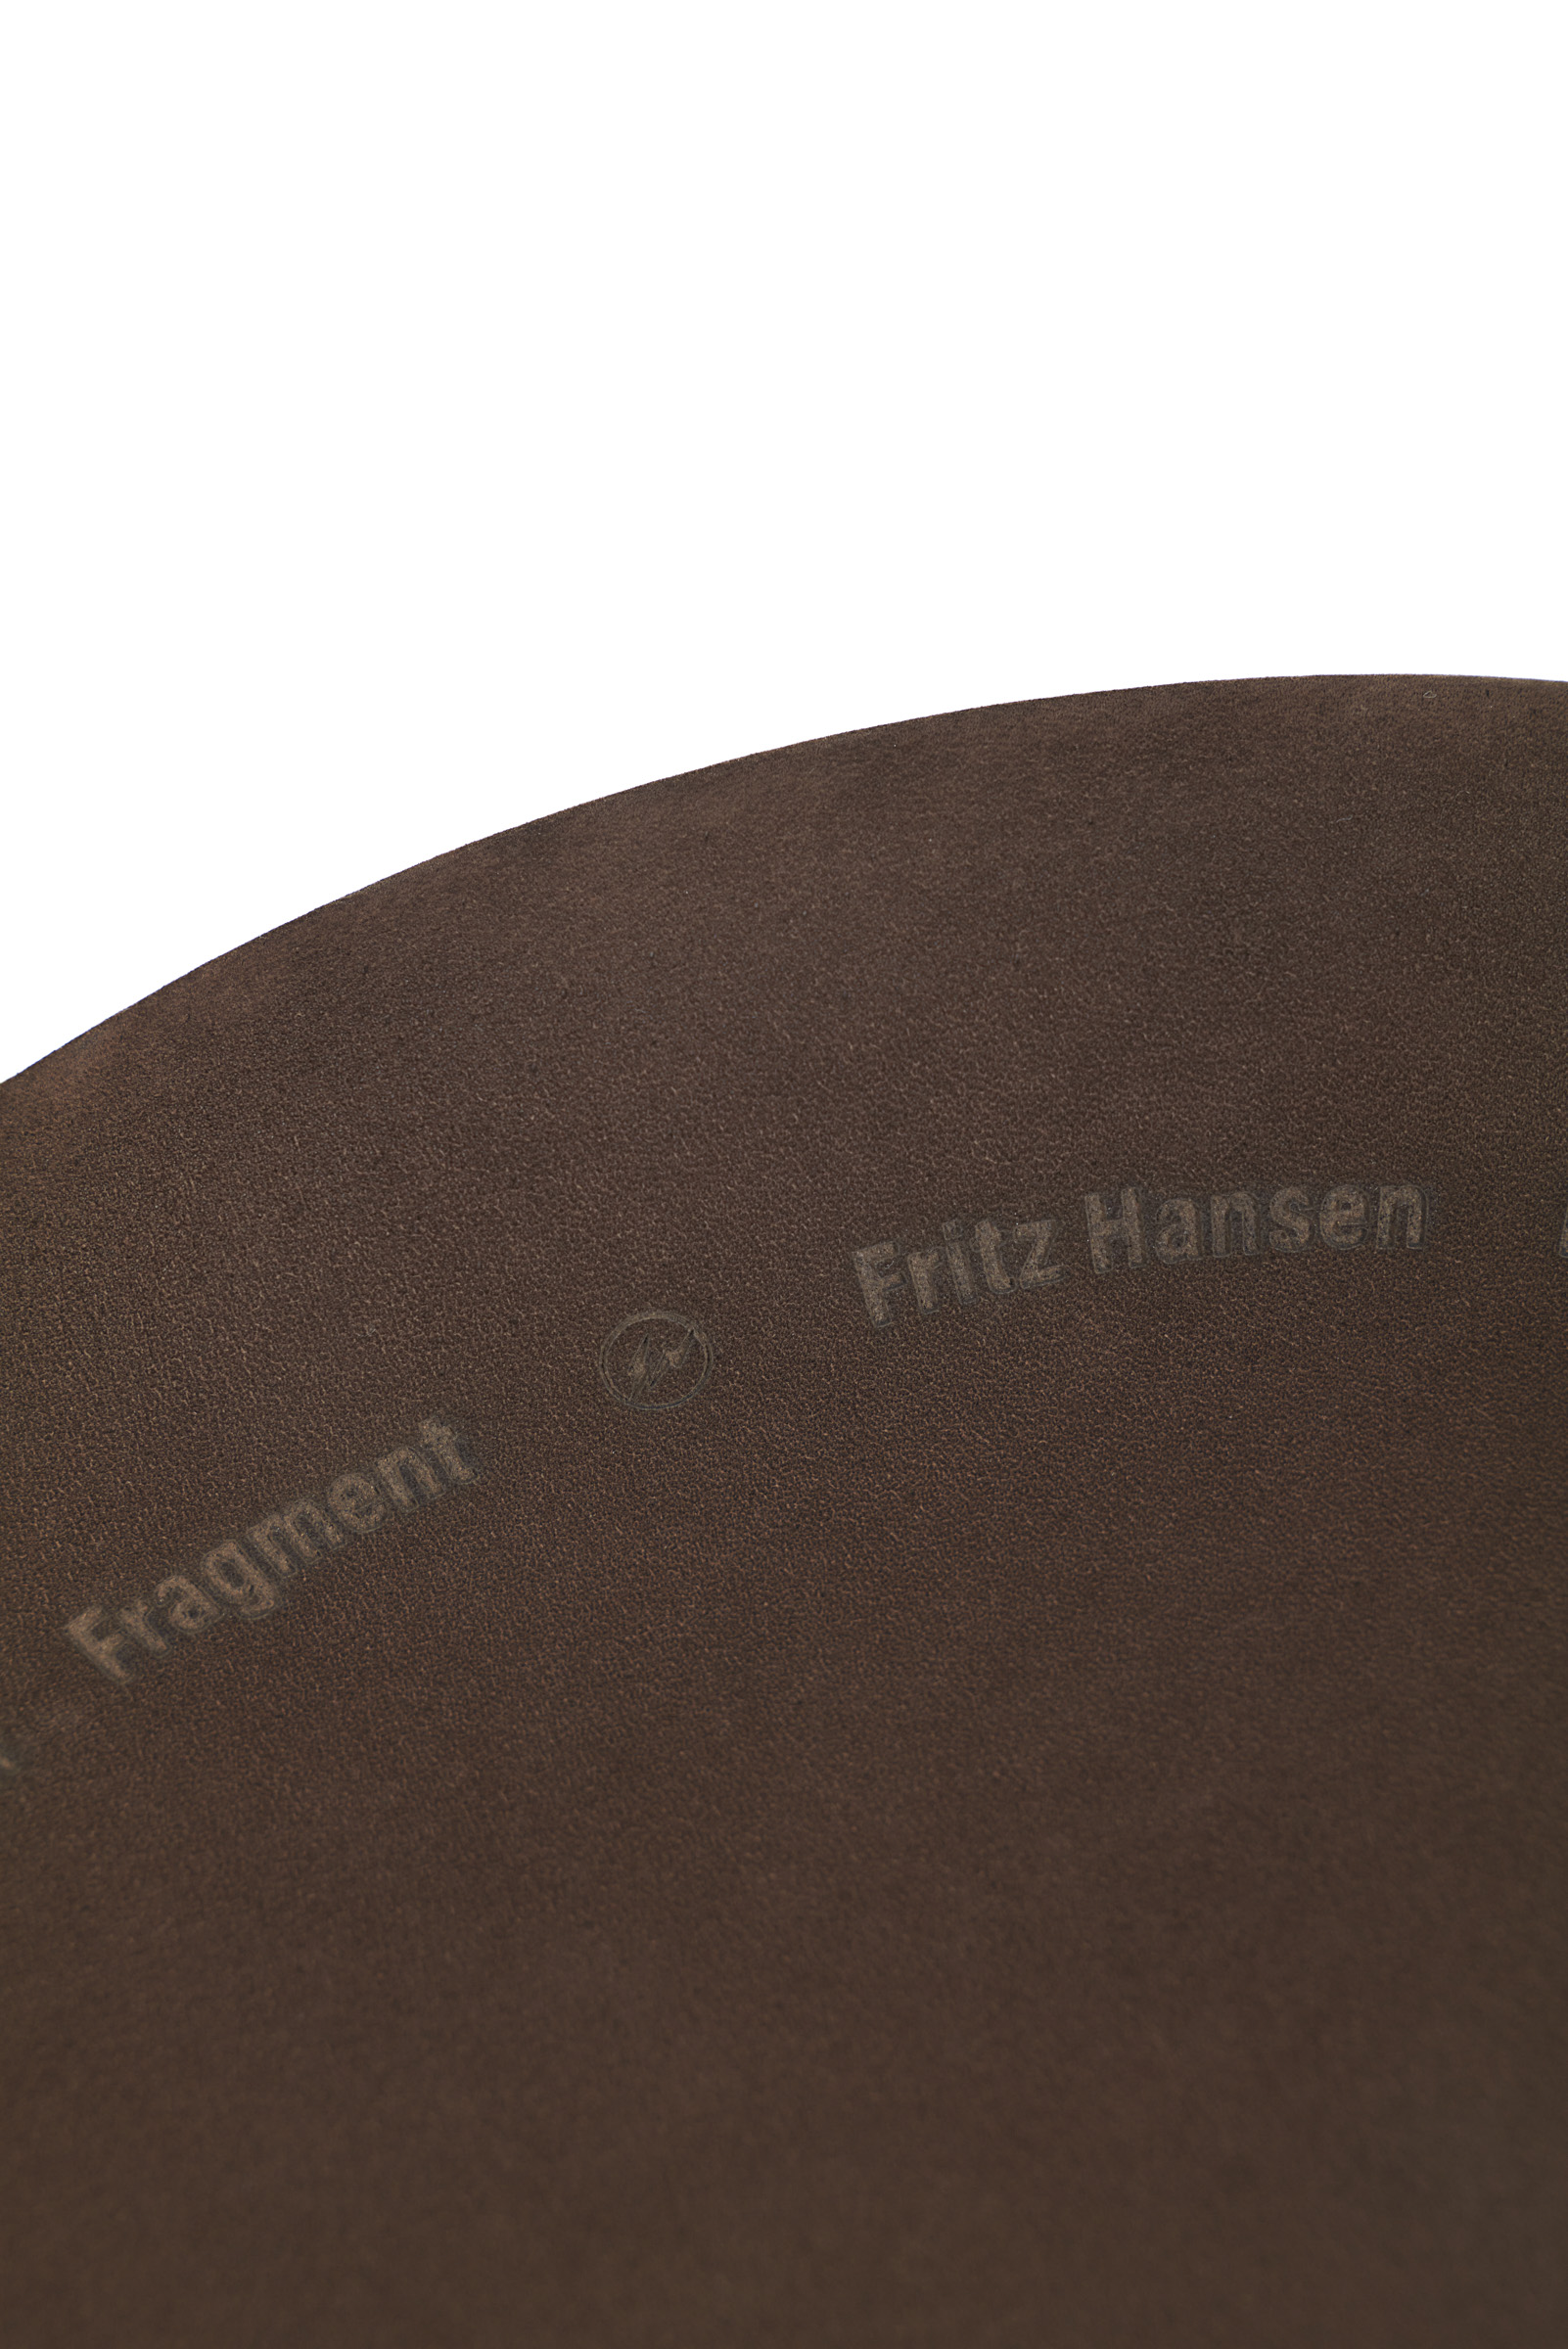 FRITZ HANSEN × FRAGMENT ドットスツール BLACK スツール 椅子/チェア インテリア・住まい・小物 即納/取寄せ